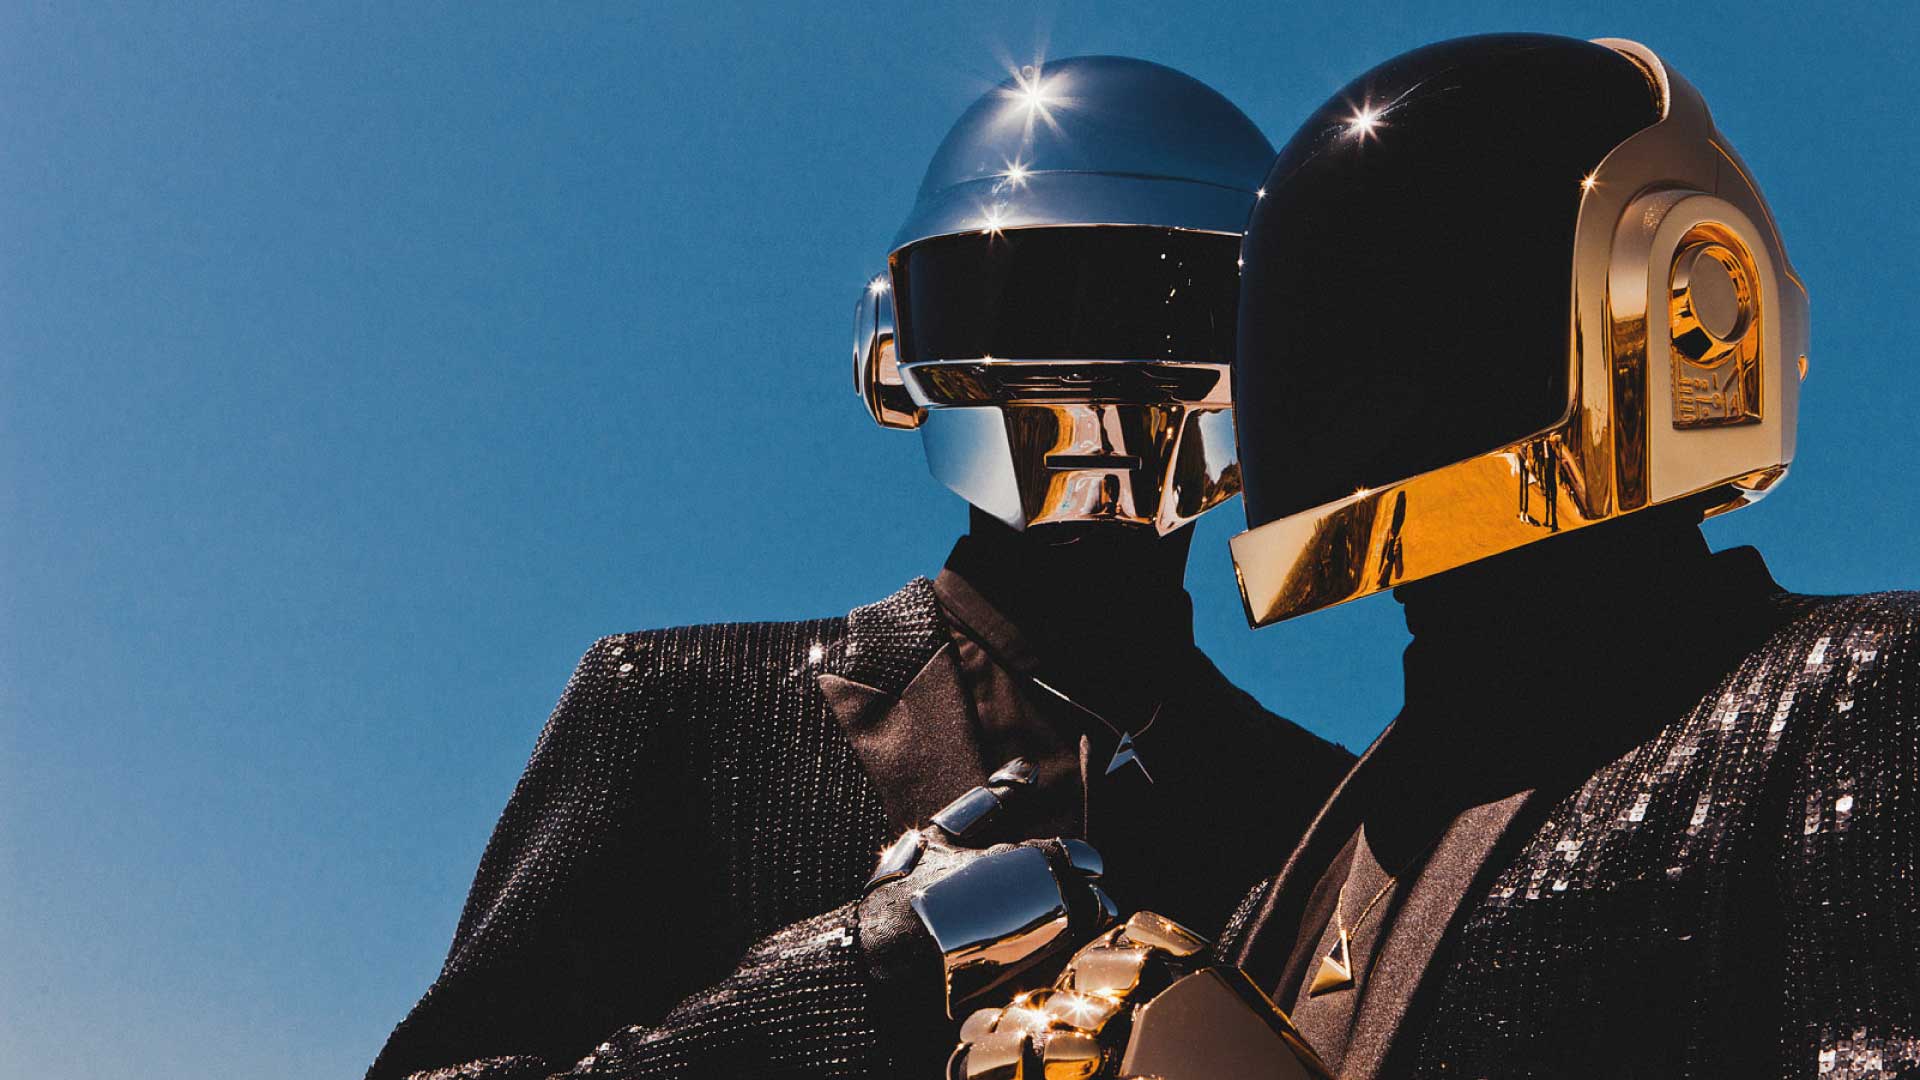 Llega Daft Punk a L.A con una experiencia de realidad virtual.